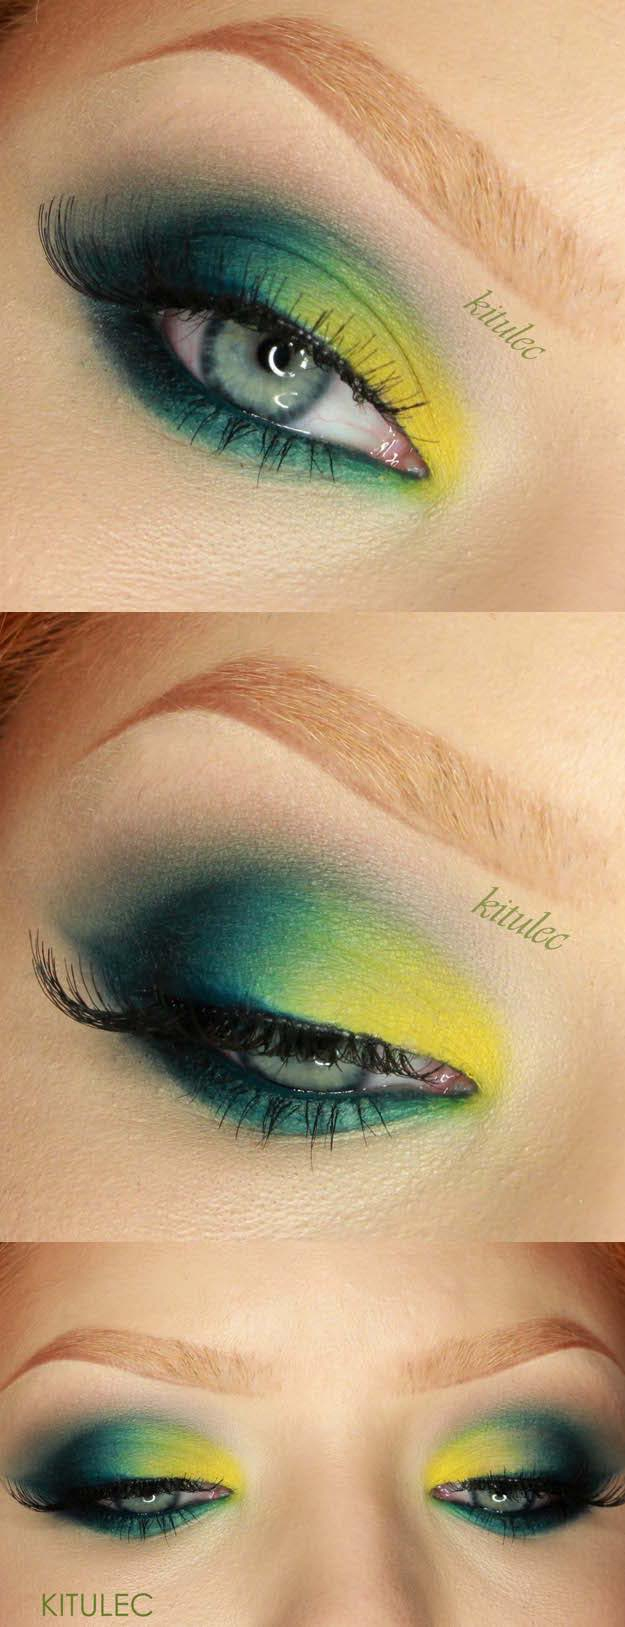 Green Cat Eye Makeup 50 Perfect Makeup Tutorials For Green Eyes The Goddess